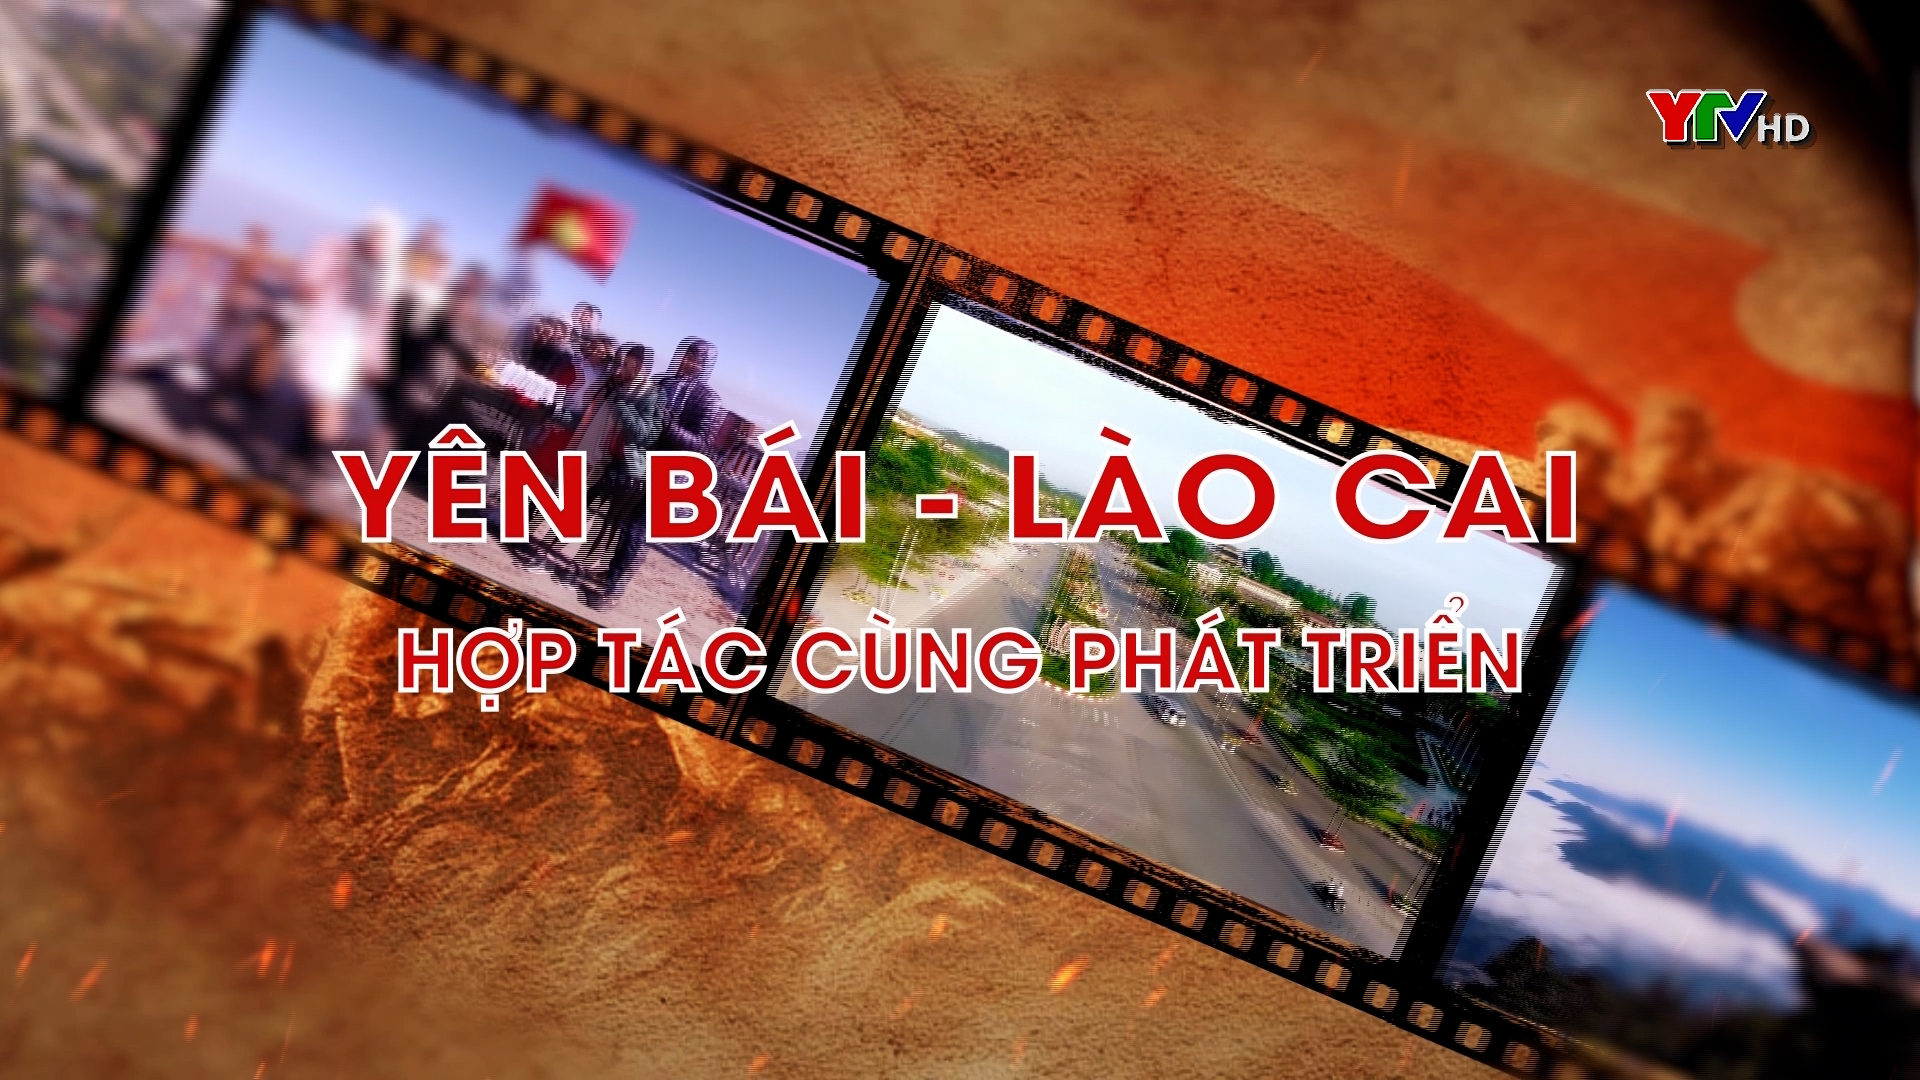 Yên Bái - Lào Cai: Hợp tác cùng phát triển